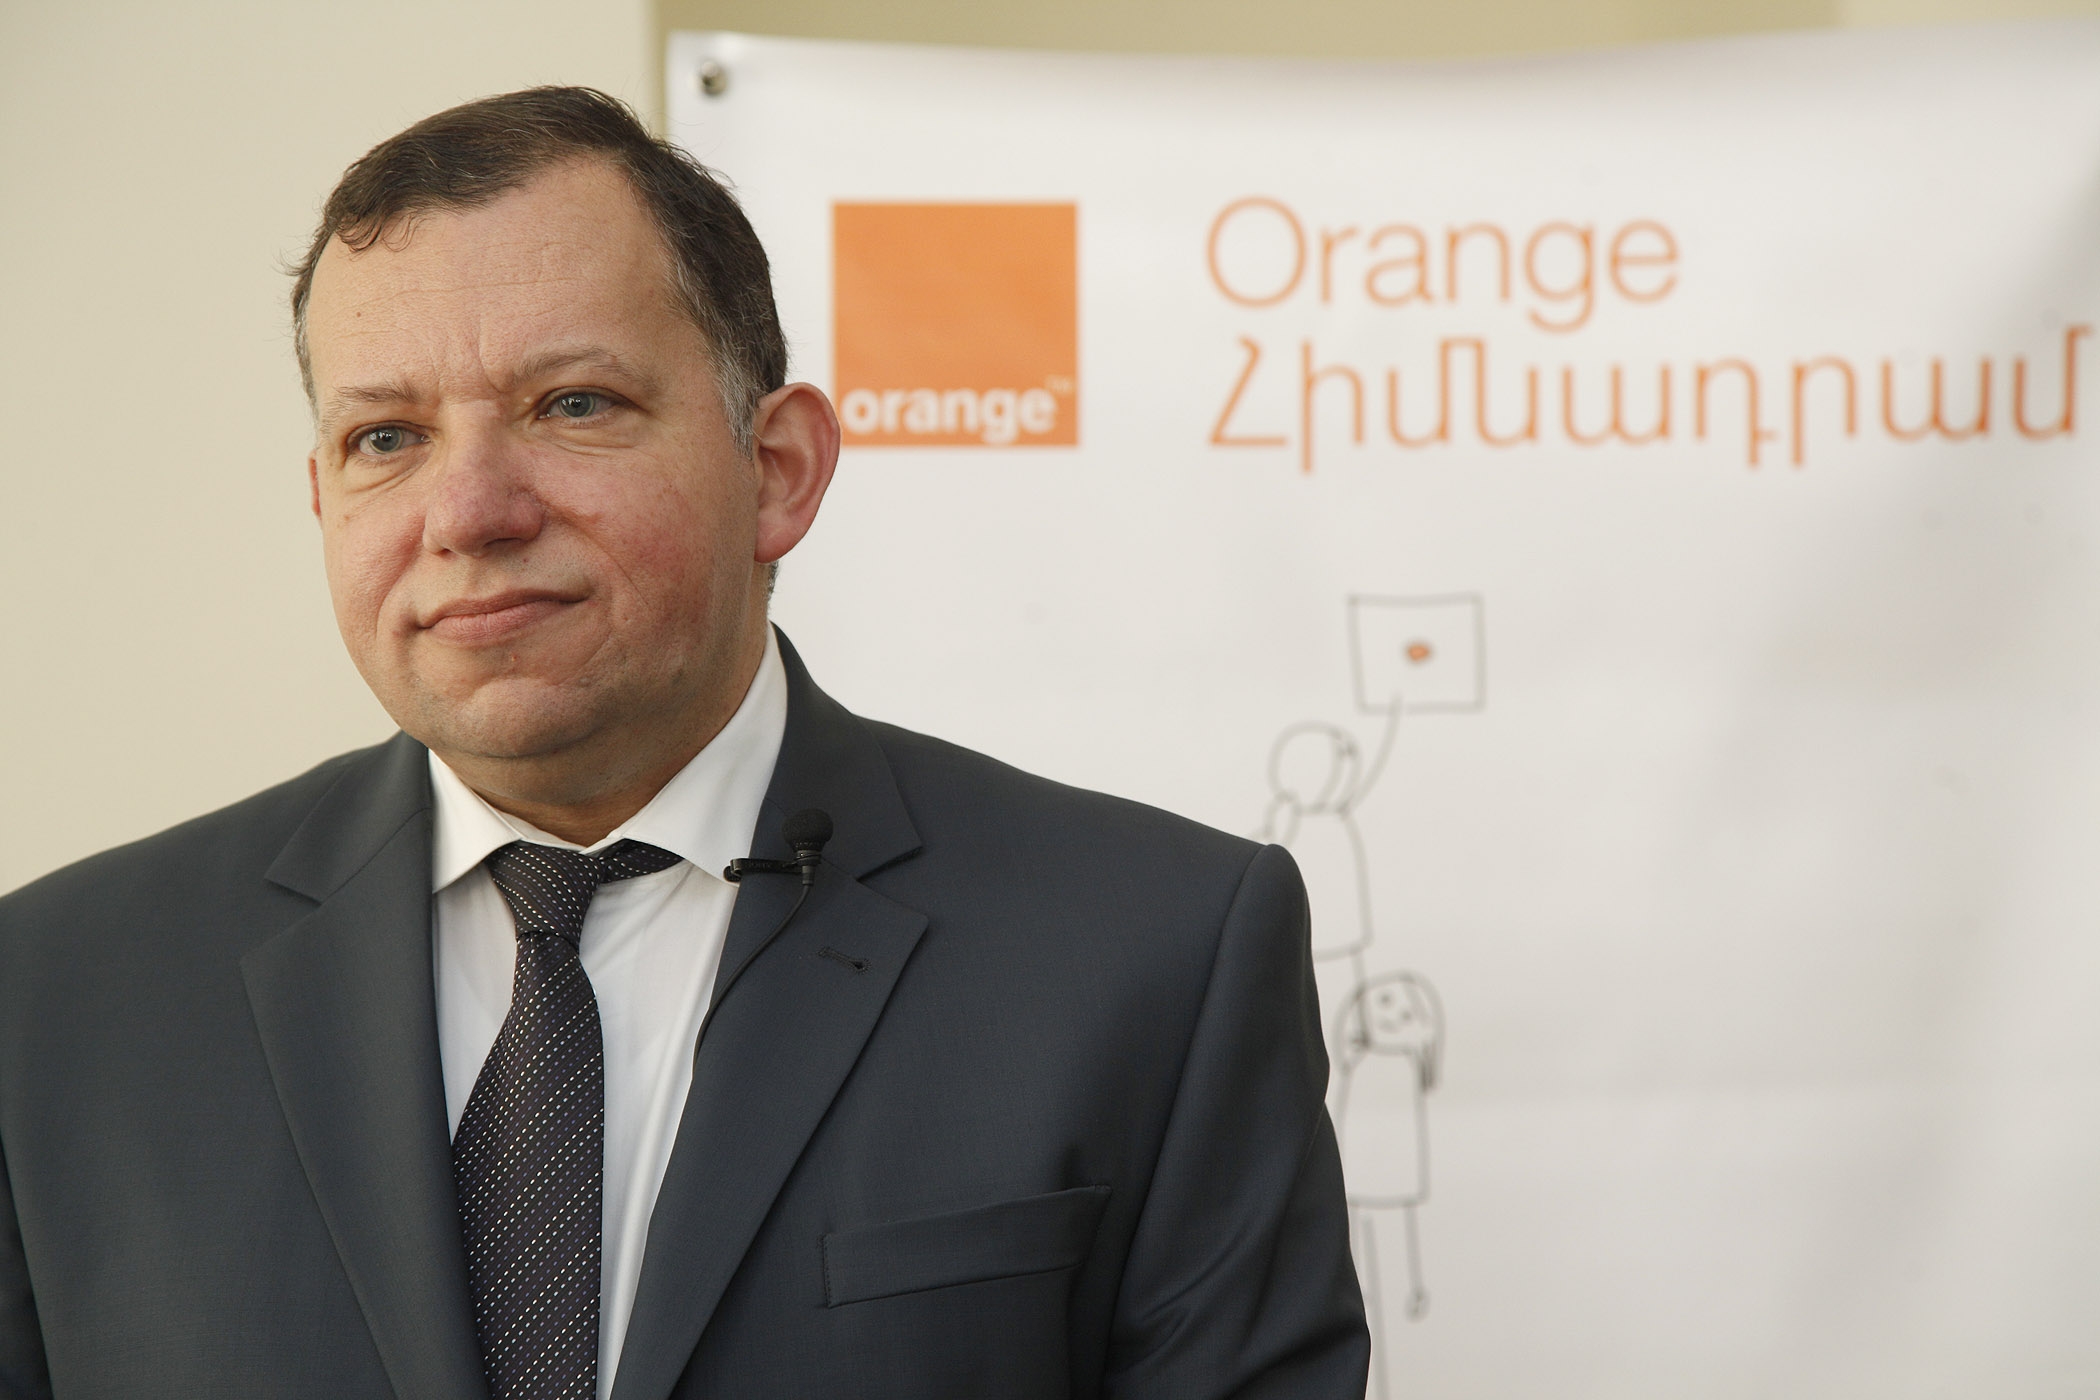 Ֆրանսիս Ժելիբտեր. Orange Armenia-ի հեռանալուց հետո Հայաստանի հեռահաղորդակցության շուկայի մենաշնորհումը կբացառվի Ucom-ի ներկայությամբ